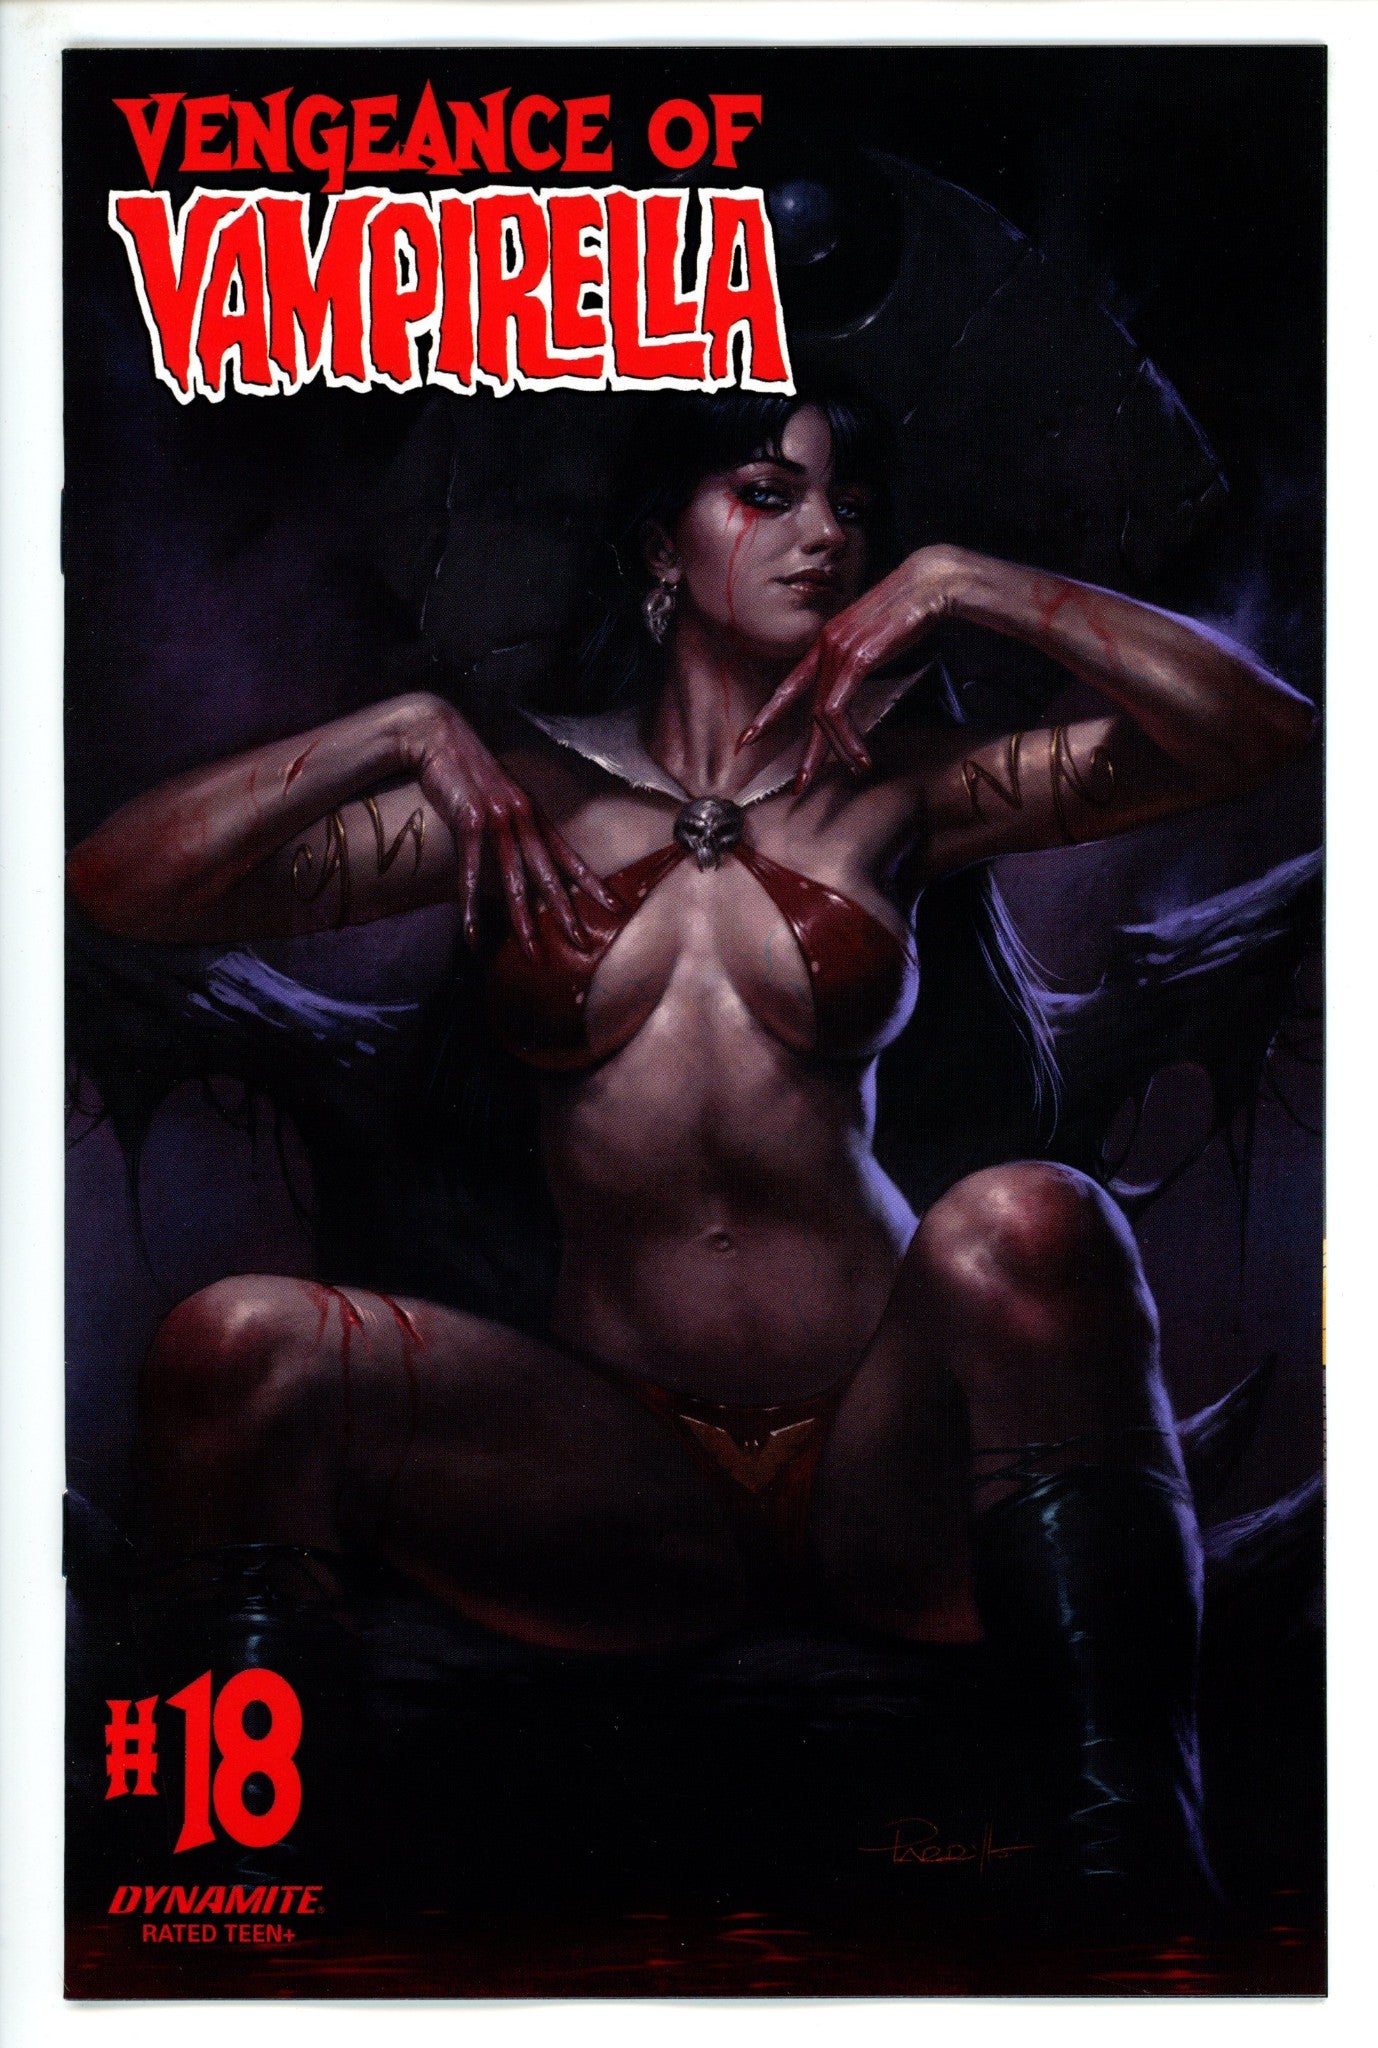 Vengeance of Vampirella Vol 2 18 (2021)